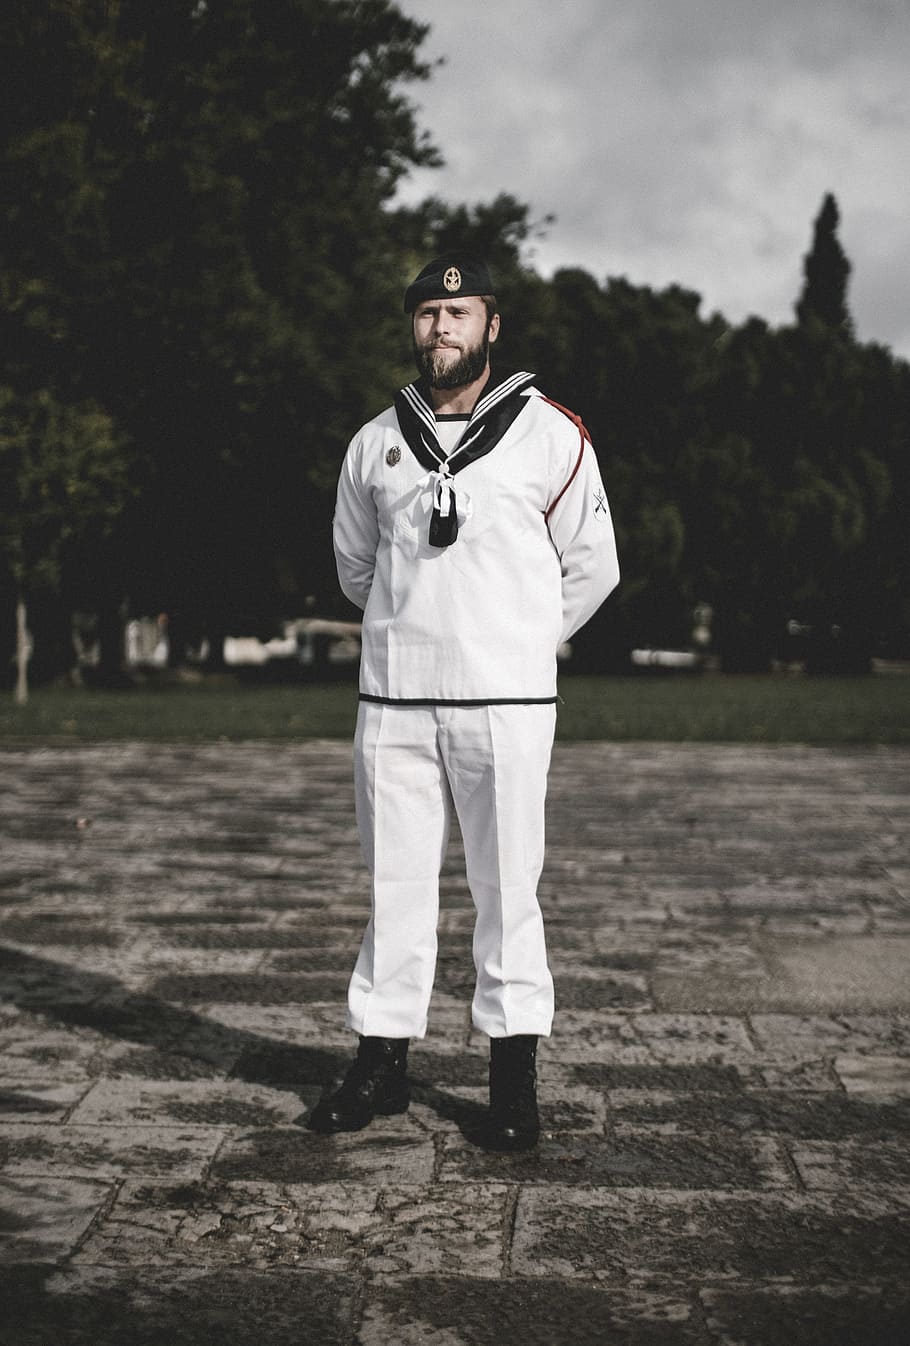 man wearing uniform standing outdoors, fujifilm x, in uniform, HD wallpaper